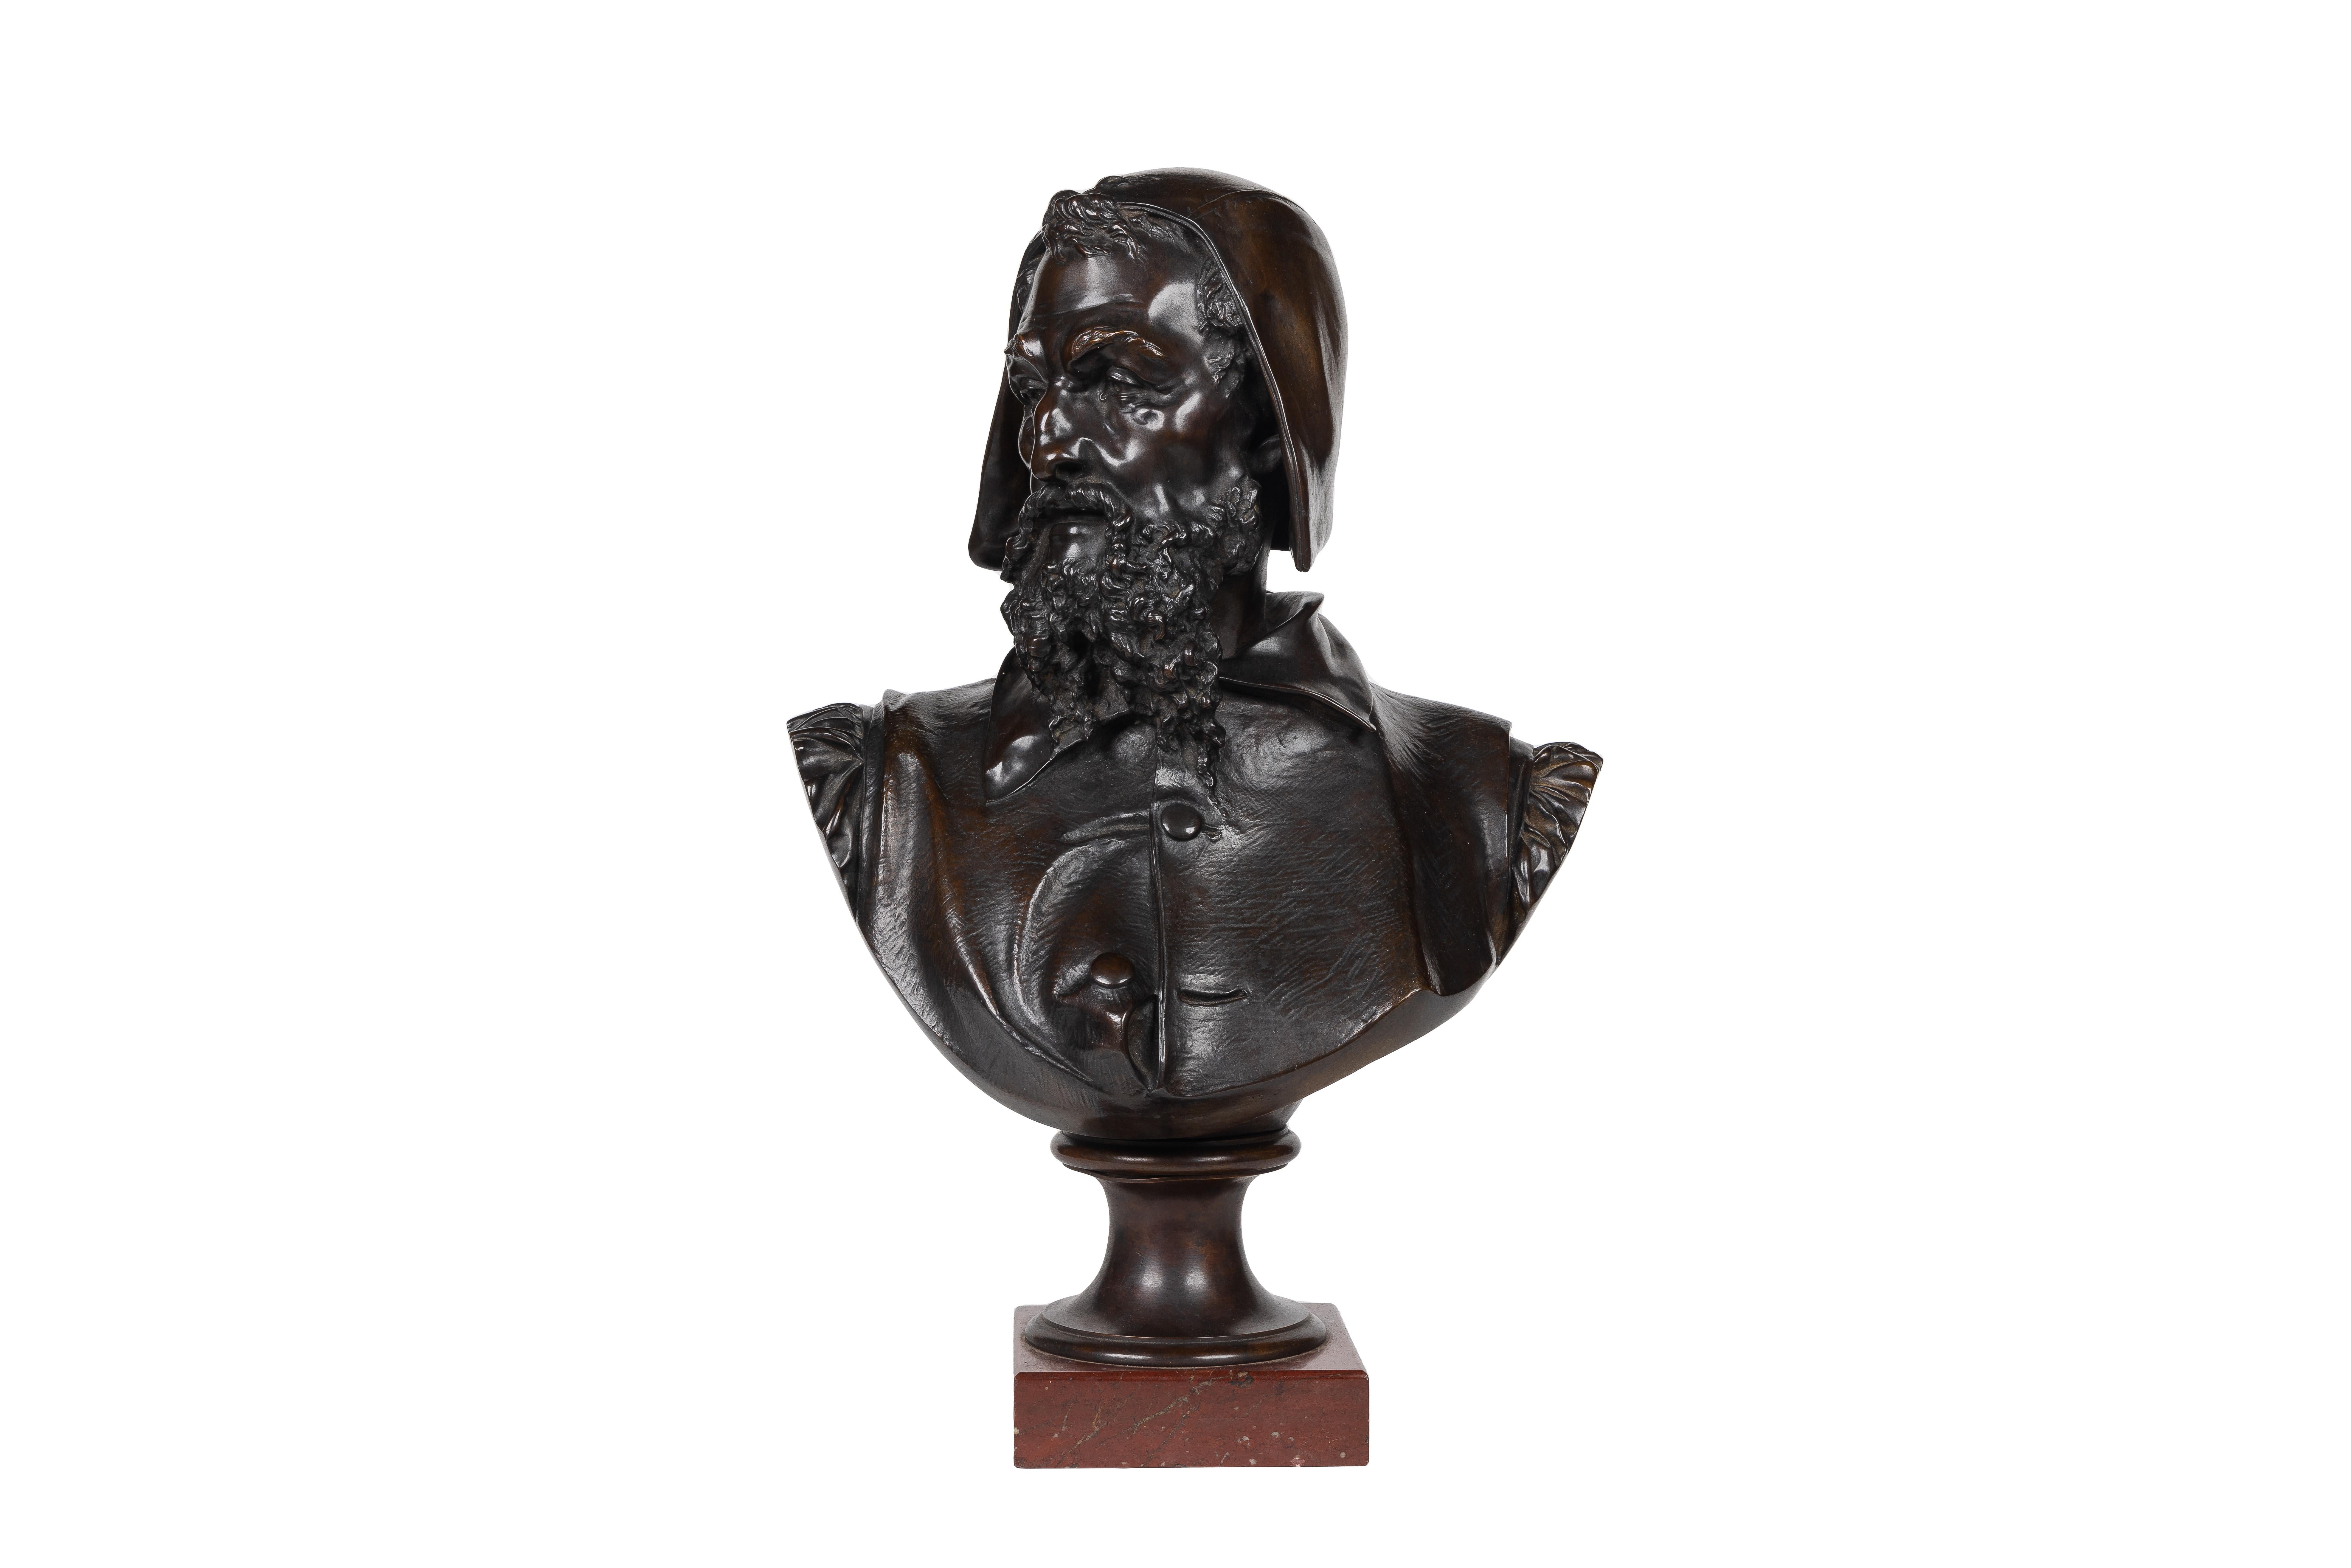 Albert-Ernest Carrier-Belleuse Figurative Sculpture – Seltene und bedeutende Bronzebüste von Michelangelo